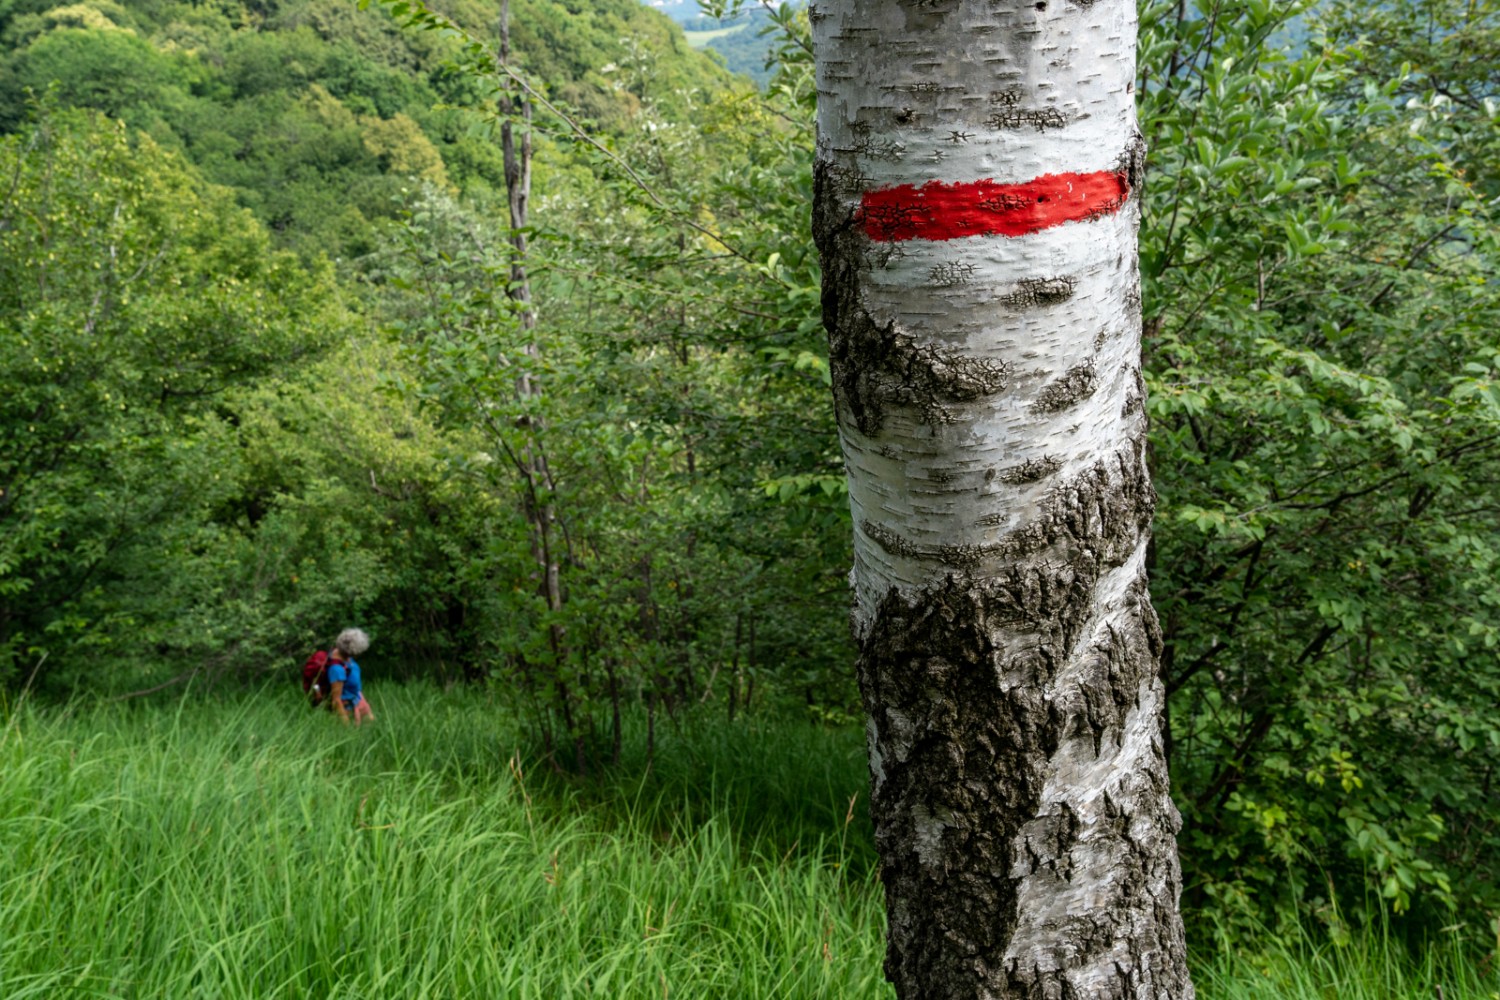 La randonnée passe souvent par des forêts de hêtres et par des clairières, comme sur la photo, où fleurit le lys safrané en juin.